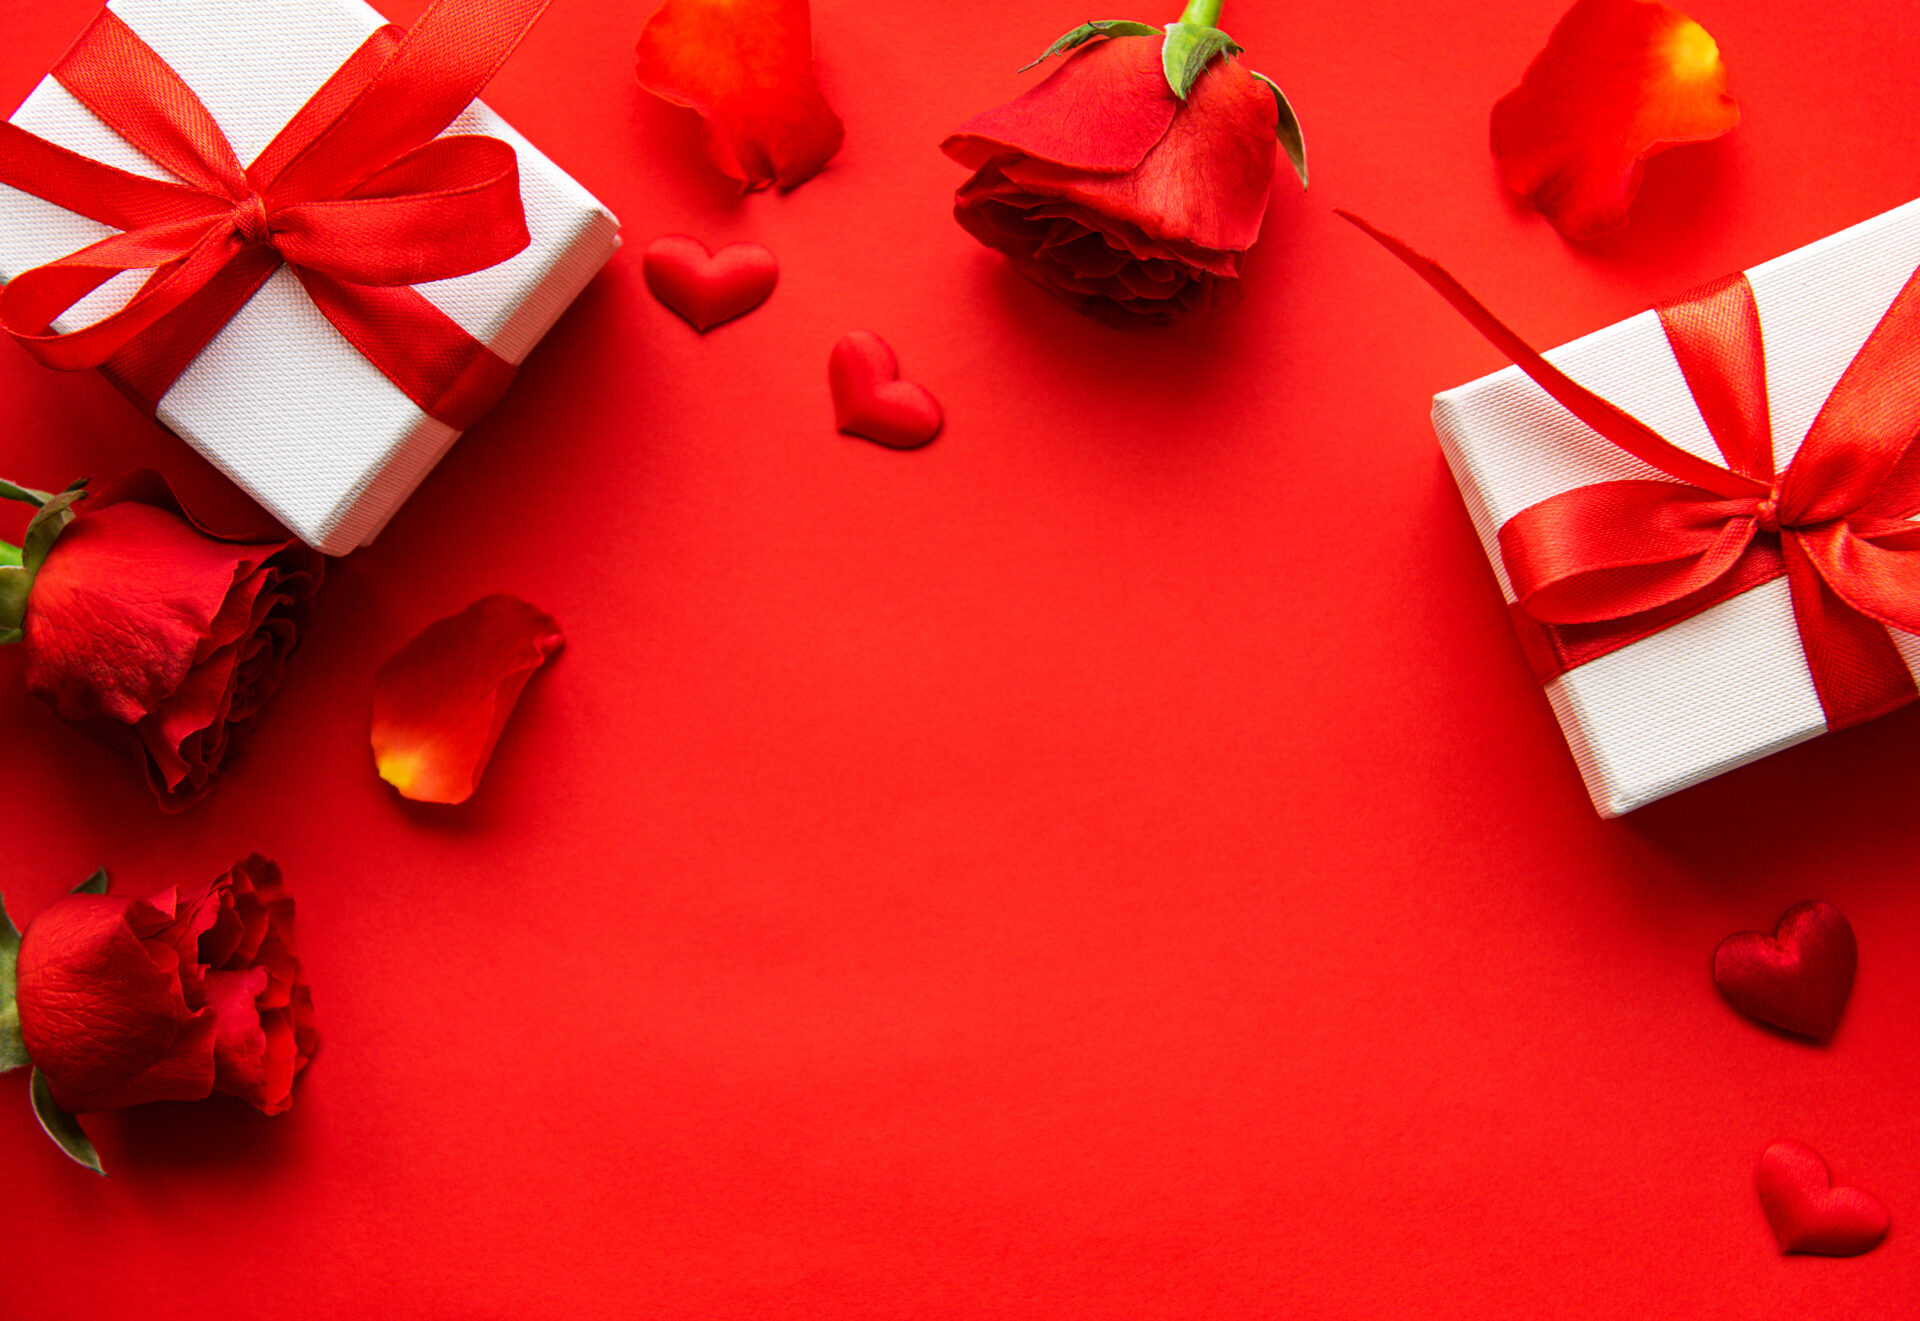 バレンタインプレゼントのイメージとバラの花